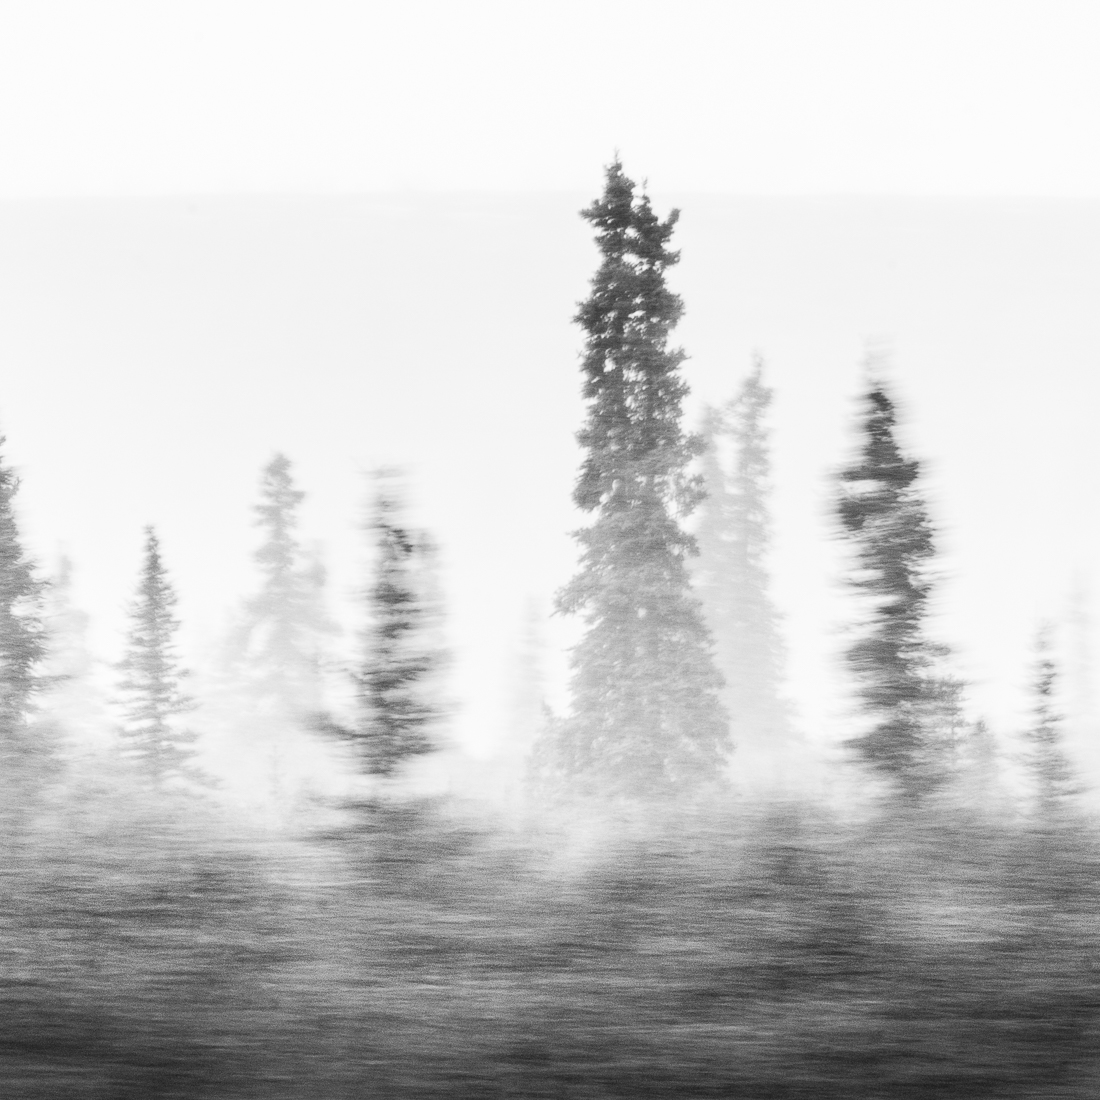 Alaskan spruce at autumn